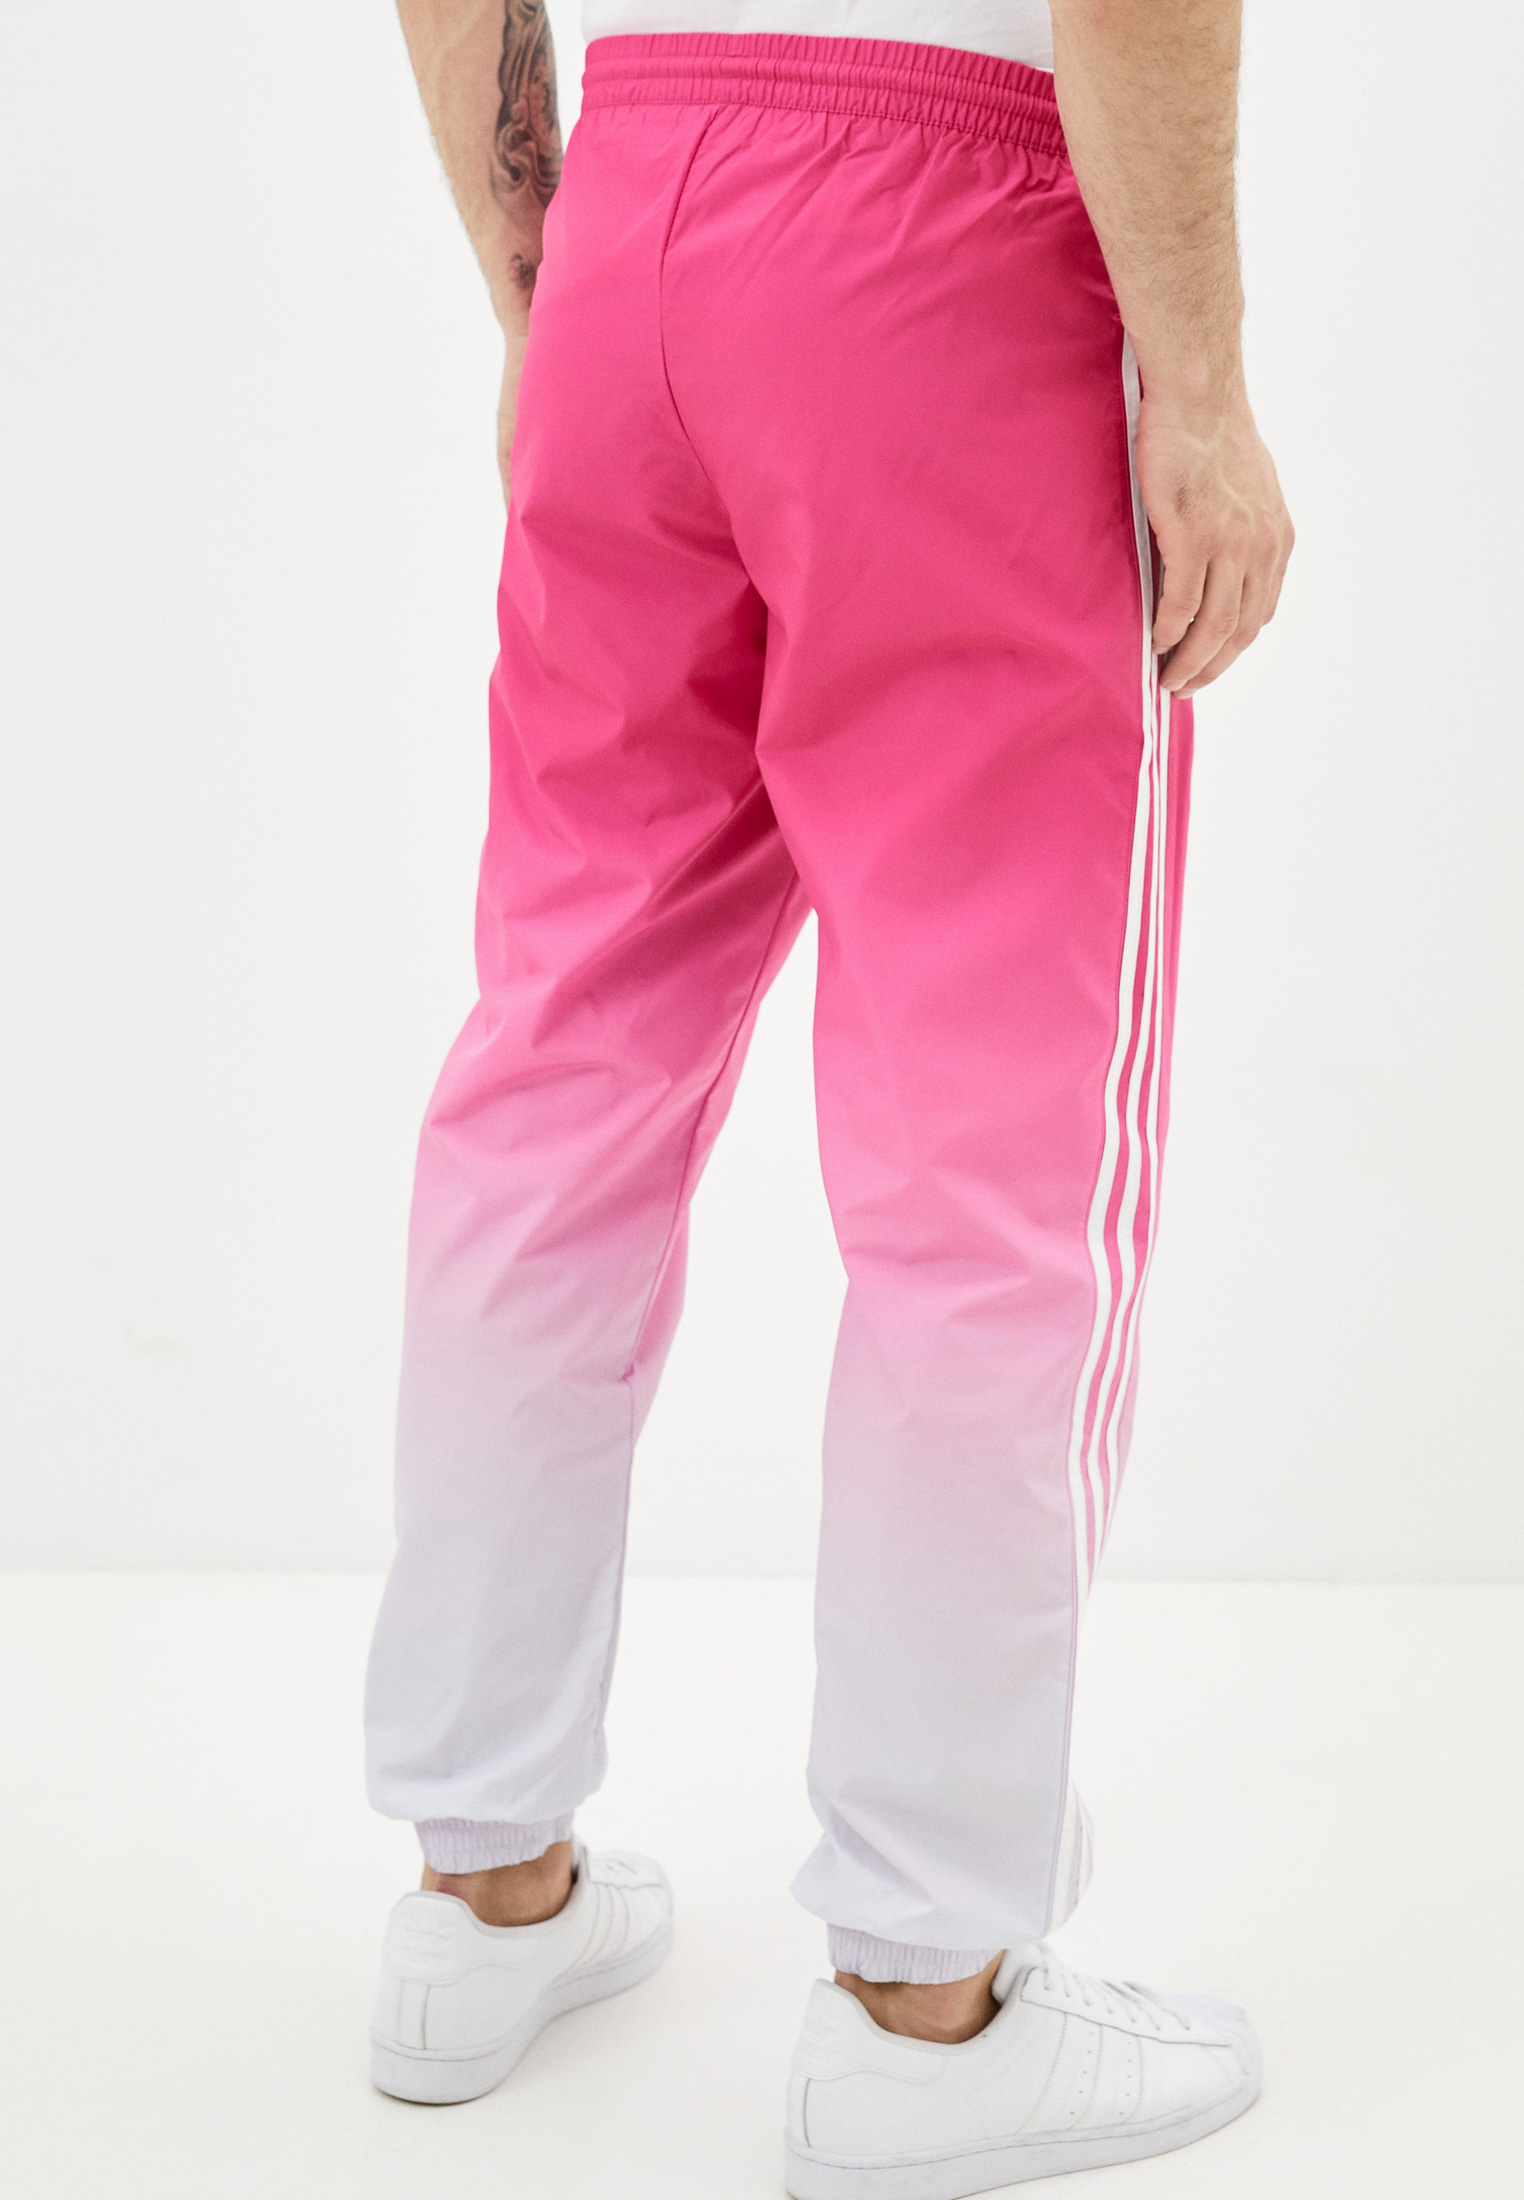 Мужские спортивные брюки Adidas Originals (Адидас Ориджиналс) GN3586 купить  за 4940 руб.